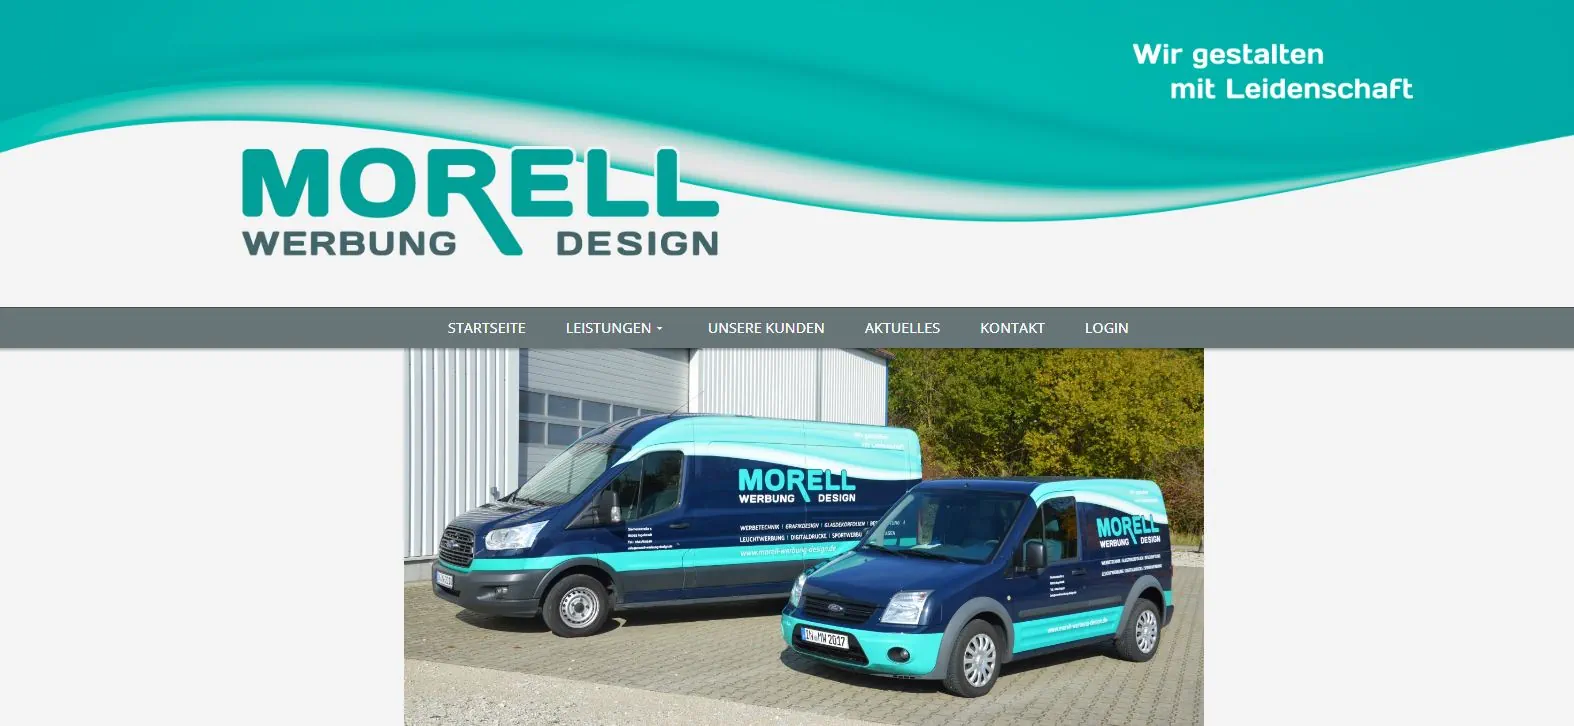 Morell Werbung & Design